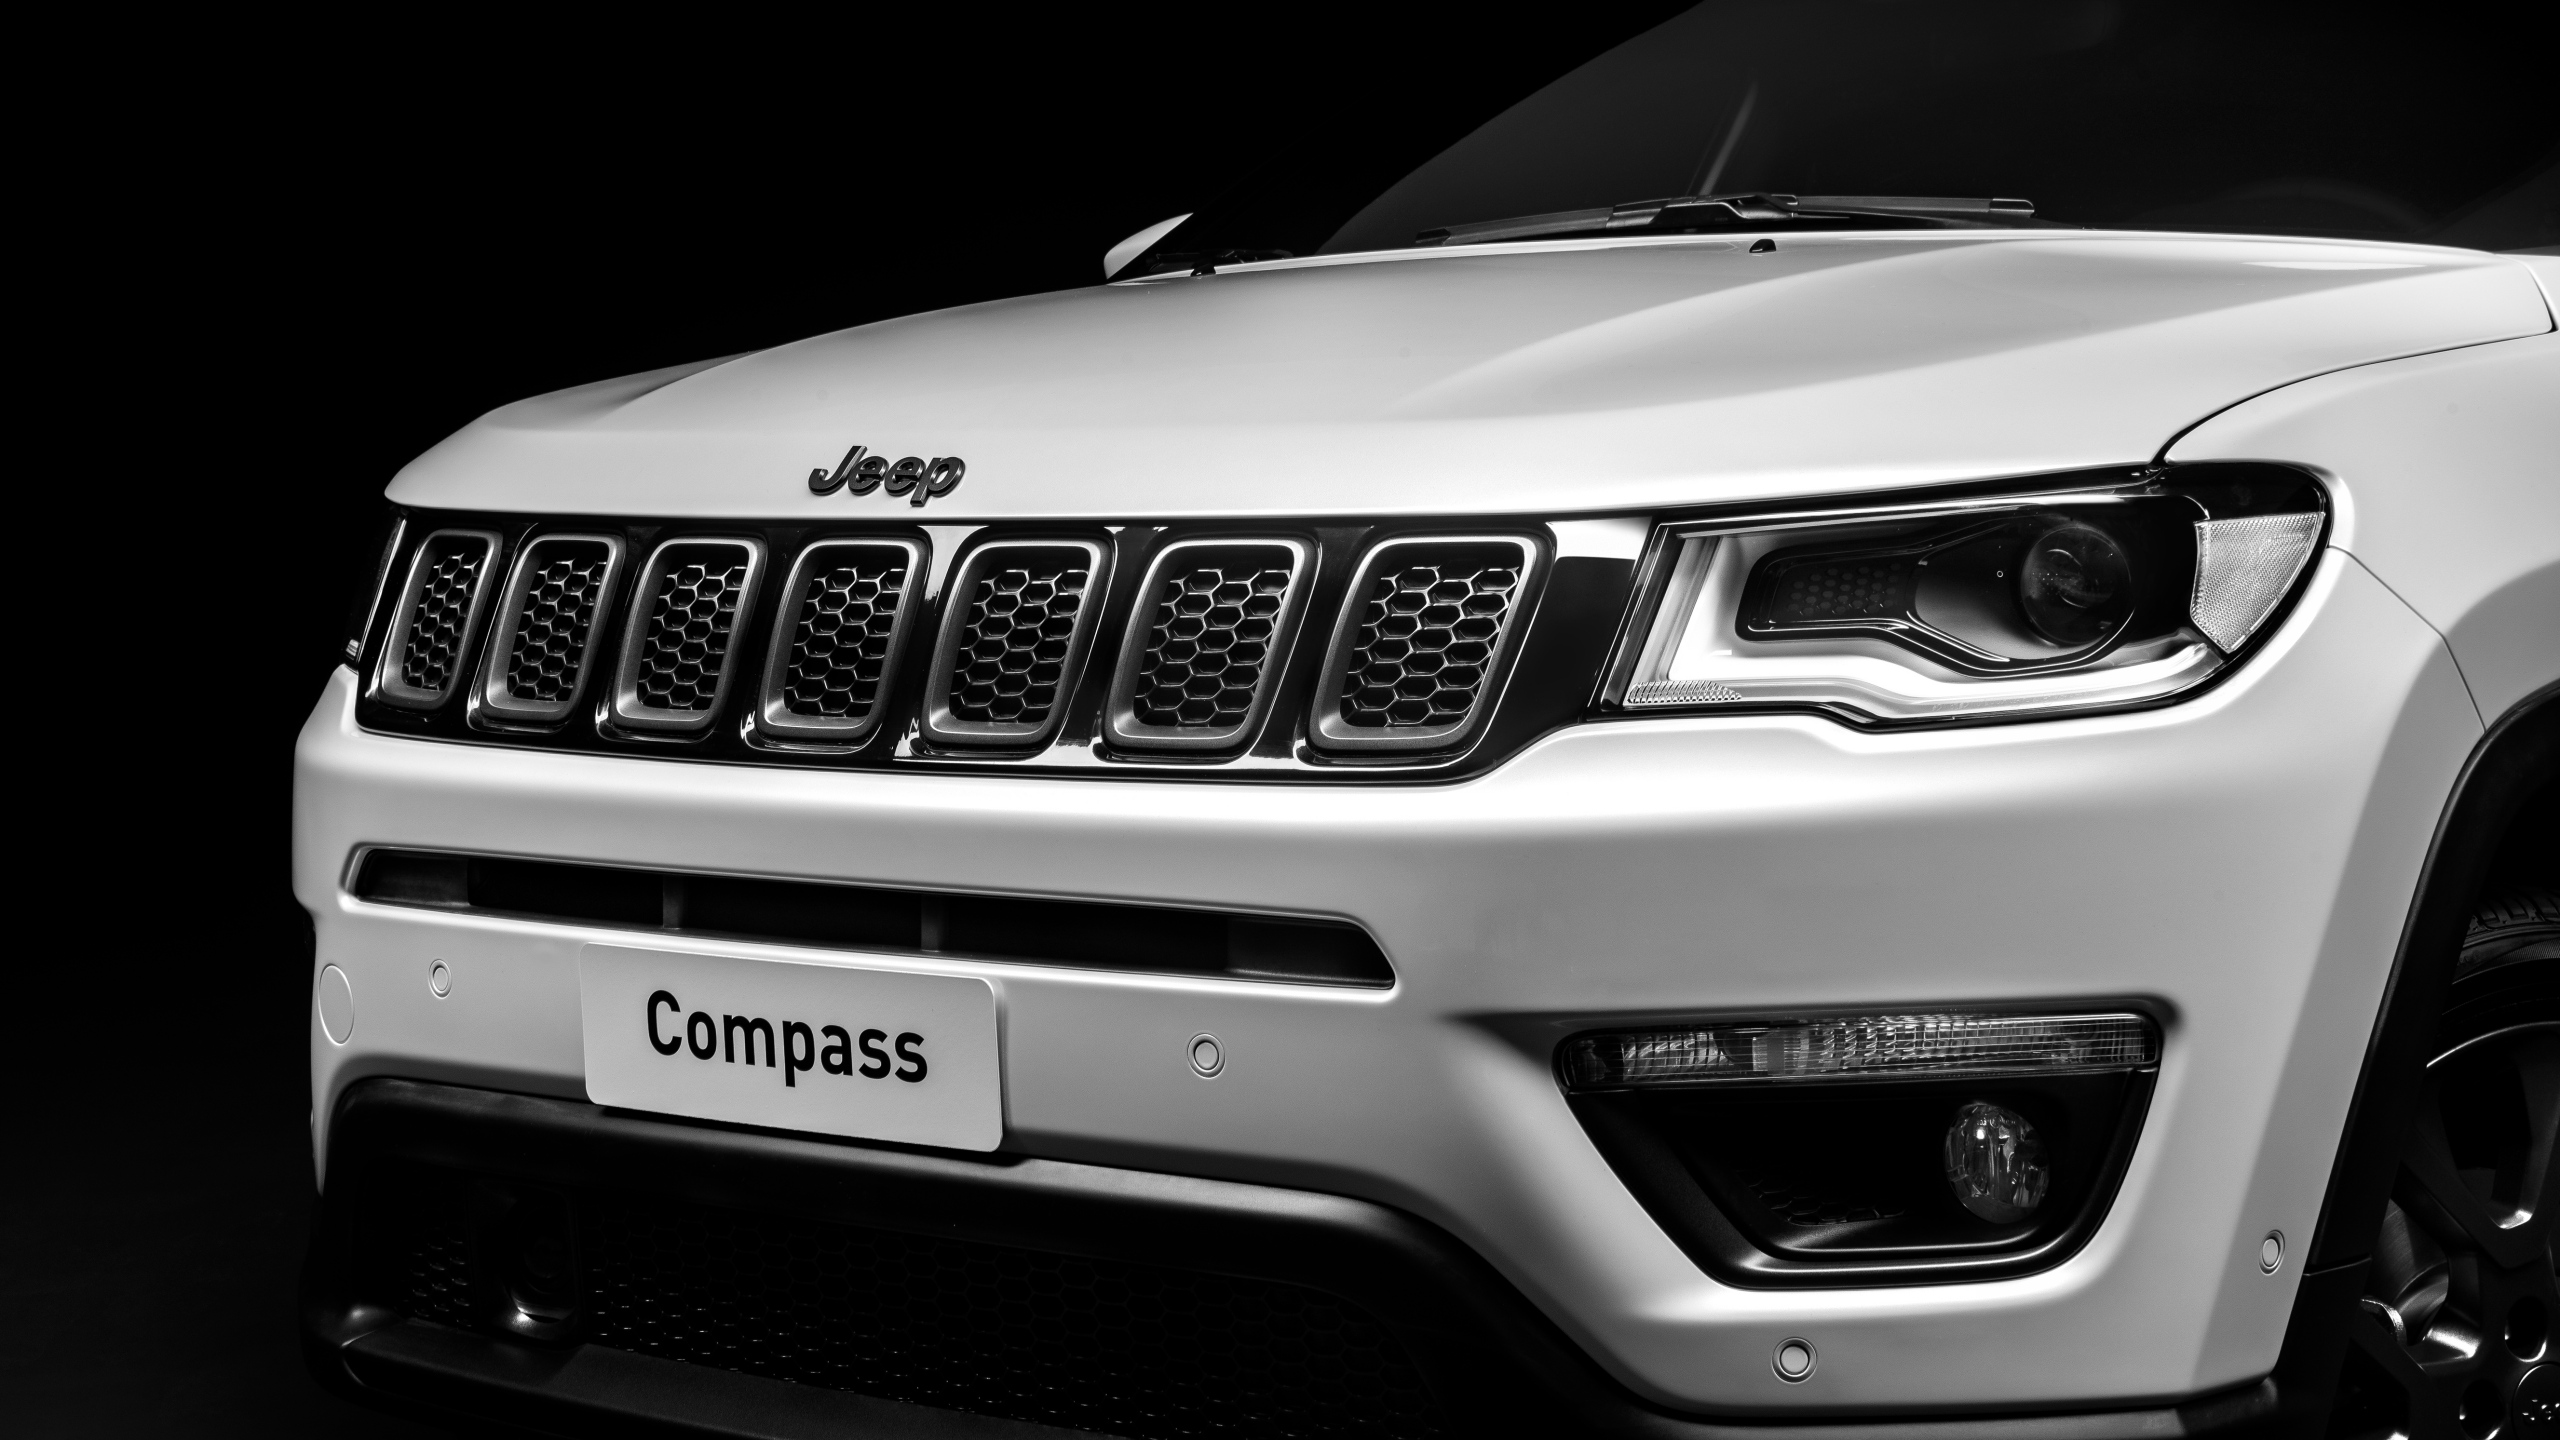 Compass s. Jeep Compass s. Джип компас 2019 Найт игл. Багажник Jeep Grand Cherokee 4xe 2022-2023. Jeep Compass стекло лобовое артикул.